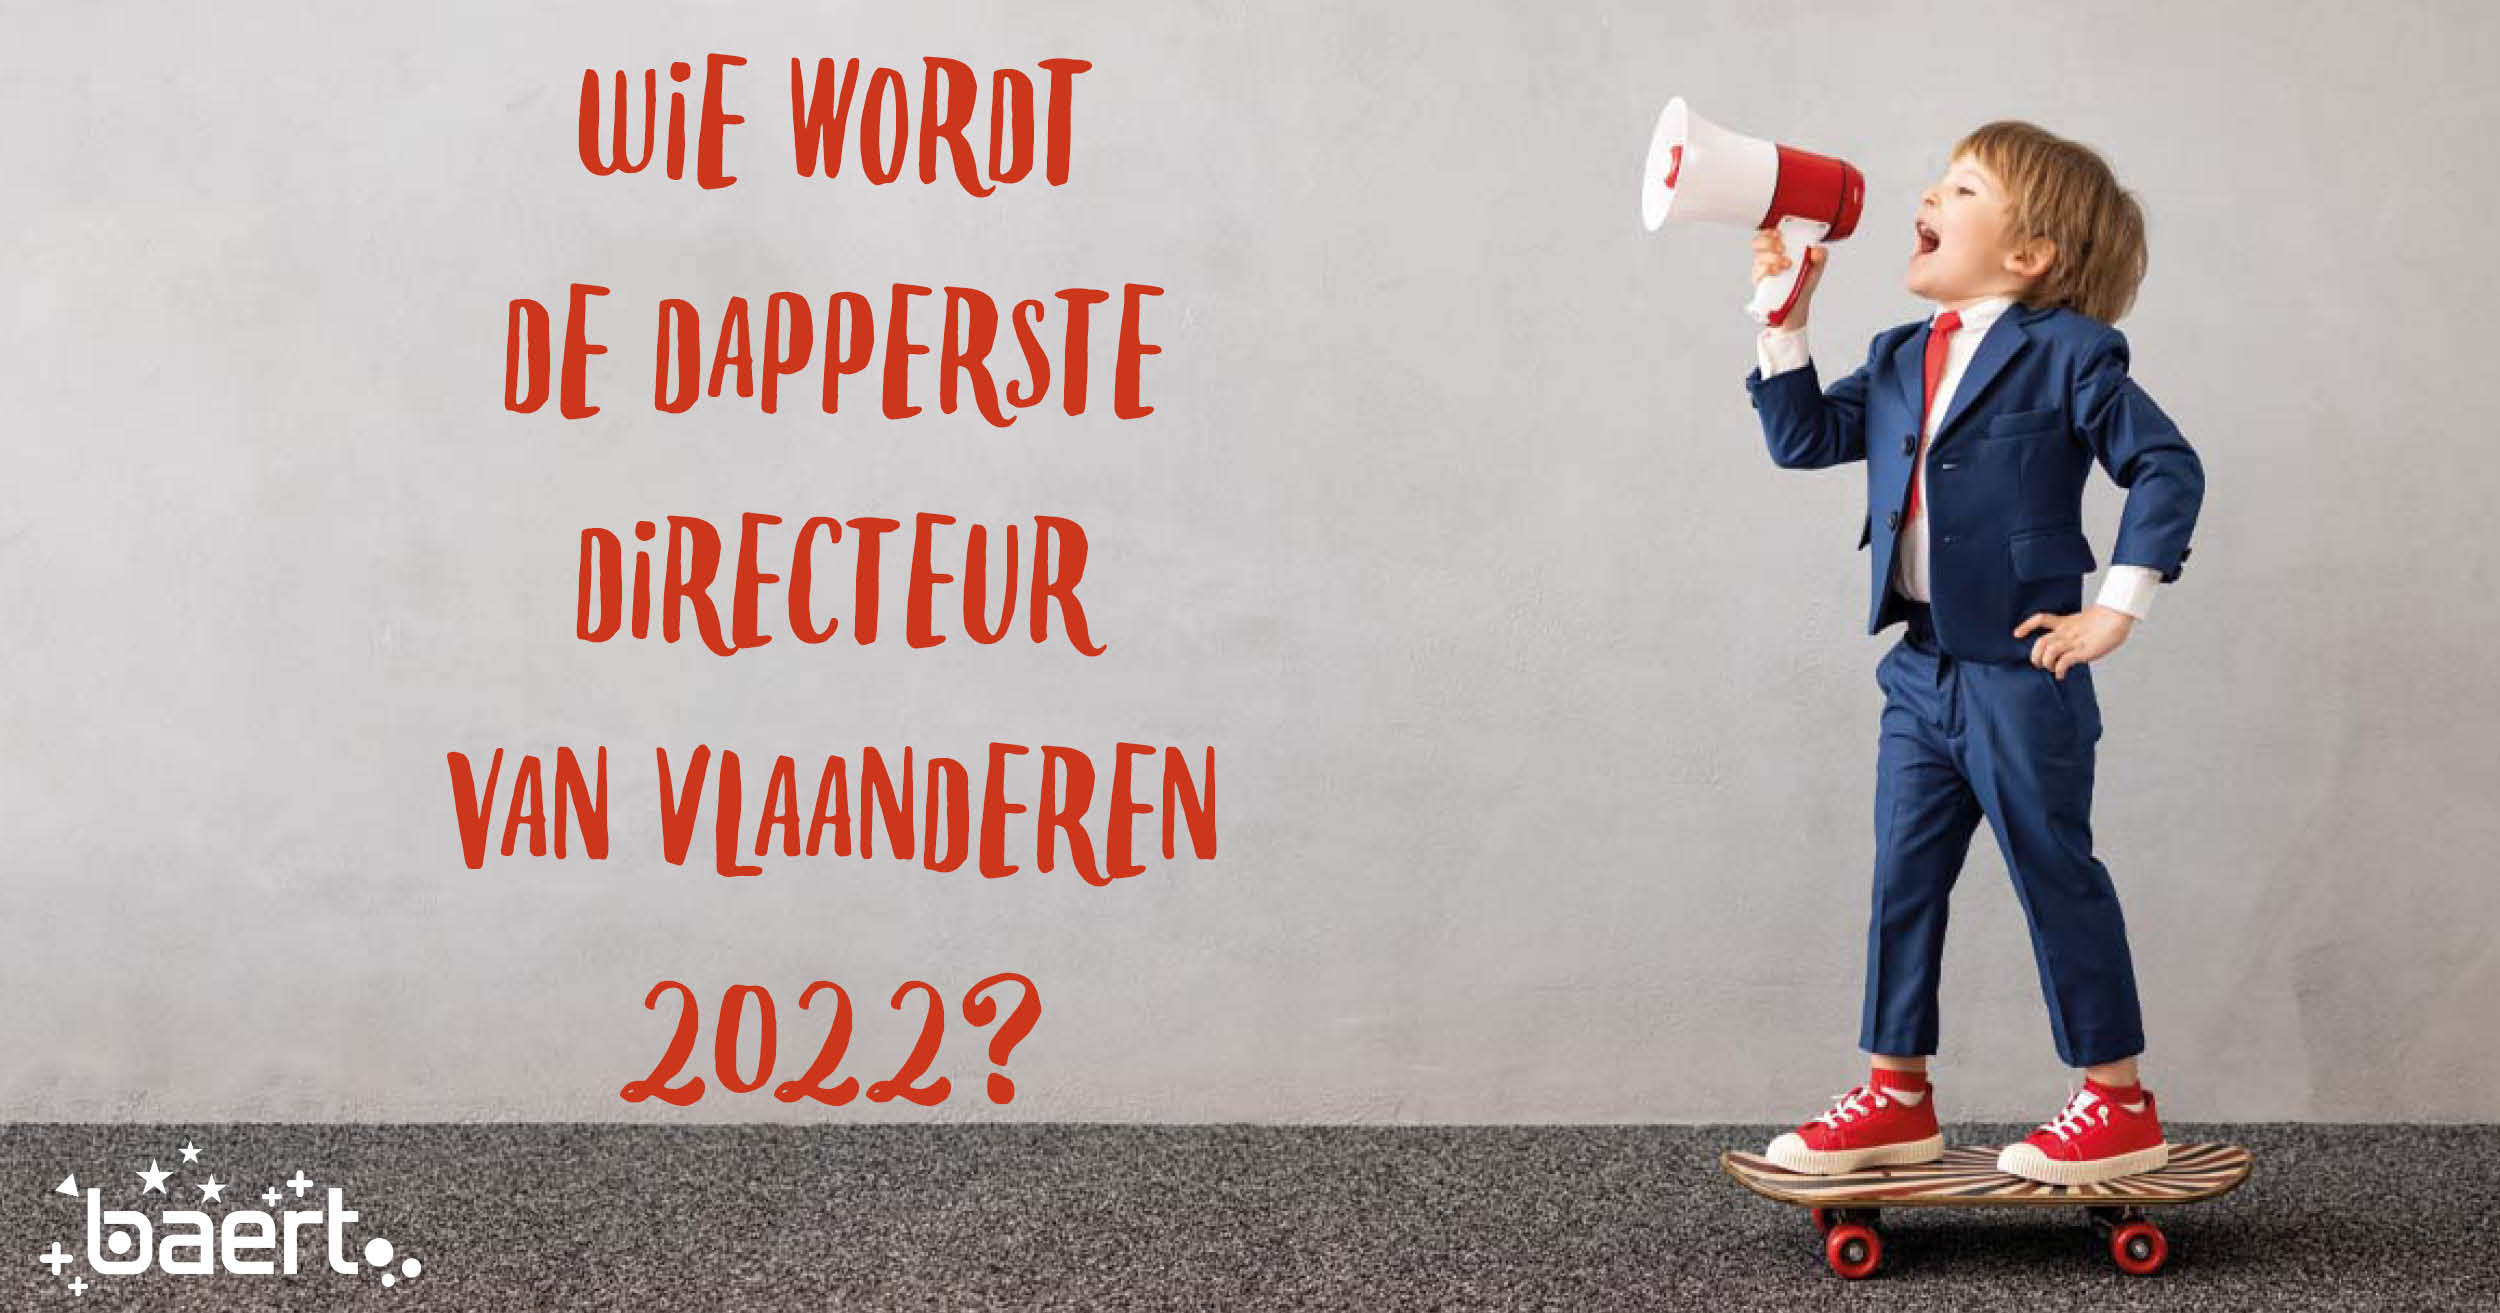 Wie is volgens jou de dapperste directeur of directrice van Vlaanderen? Laat het ons weten!